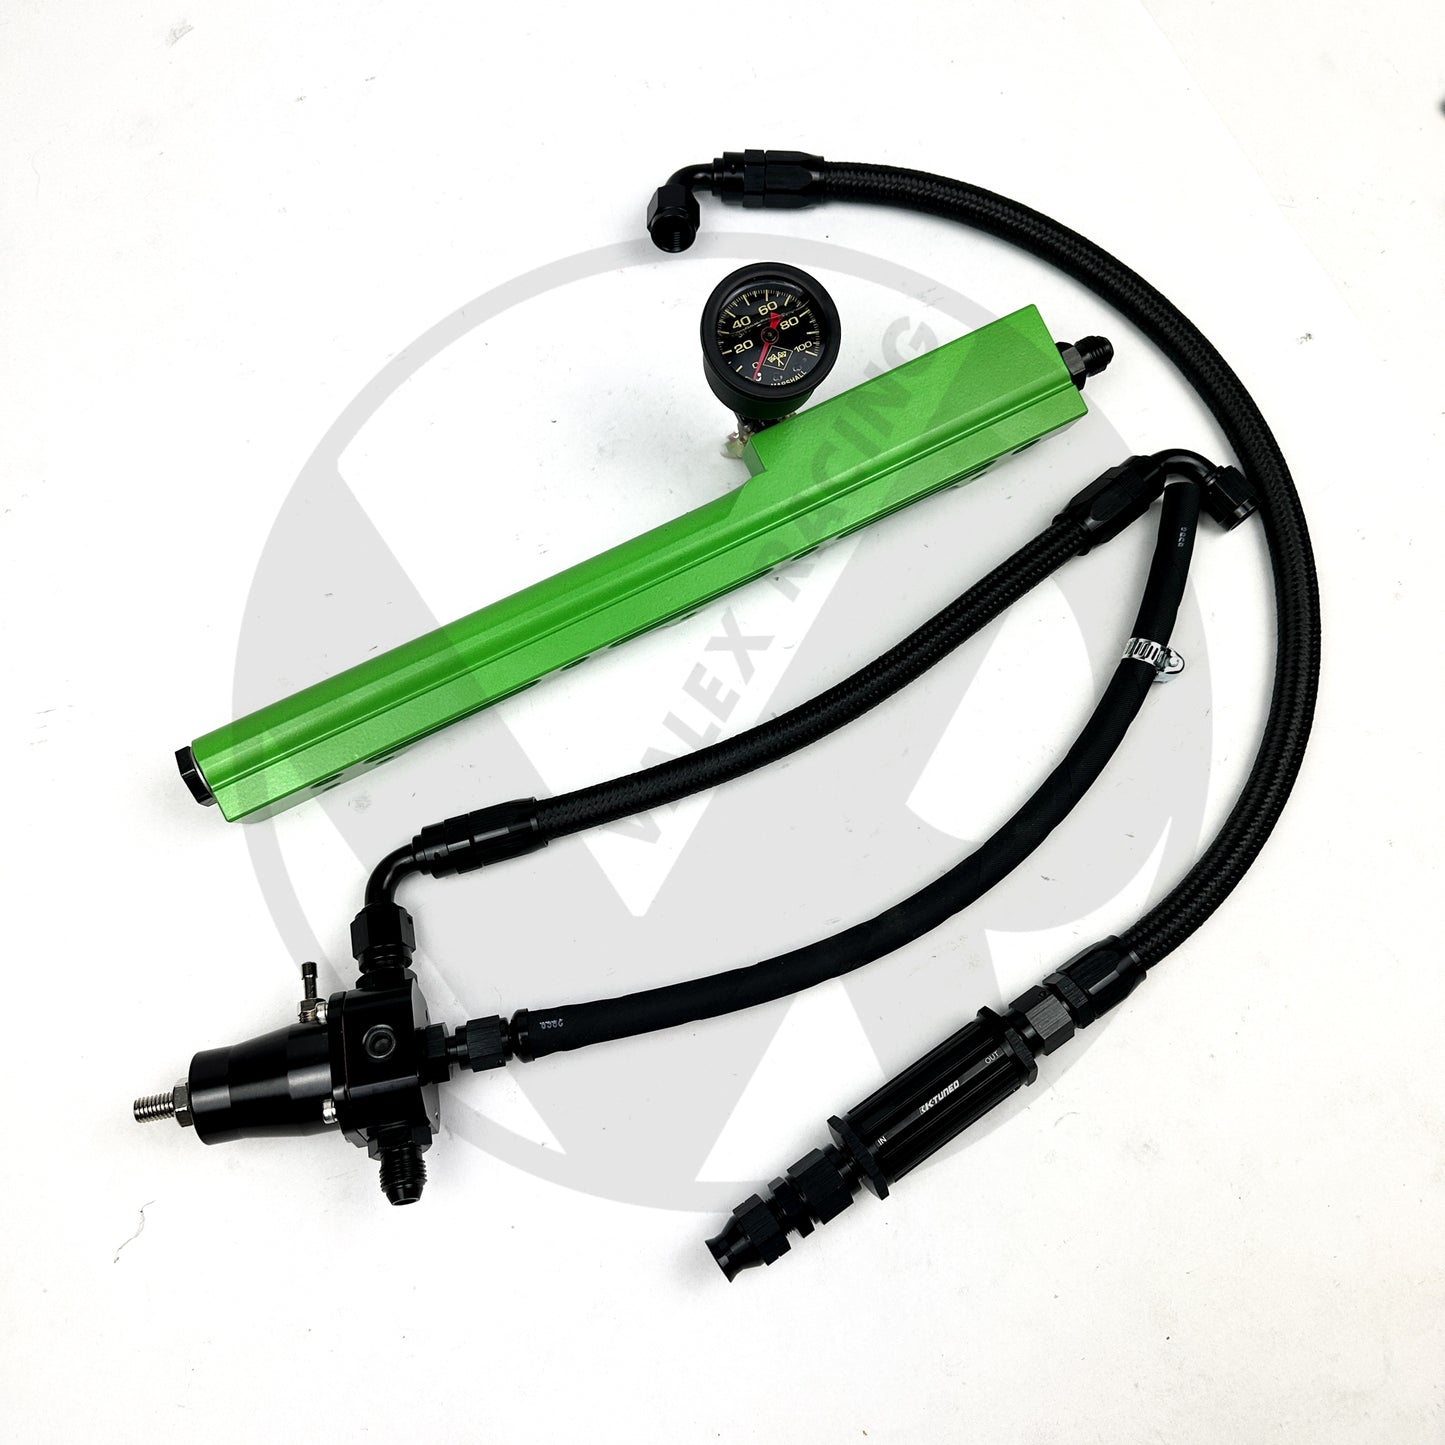 B Series Fuel Tuck System / Valex Racing Fuel Rail / K Tuned Filter for Honda Civic Acura Integra (FBO Green)